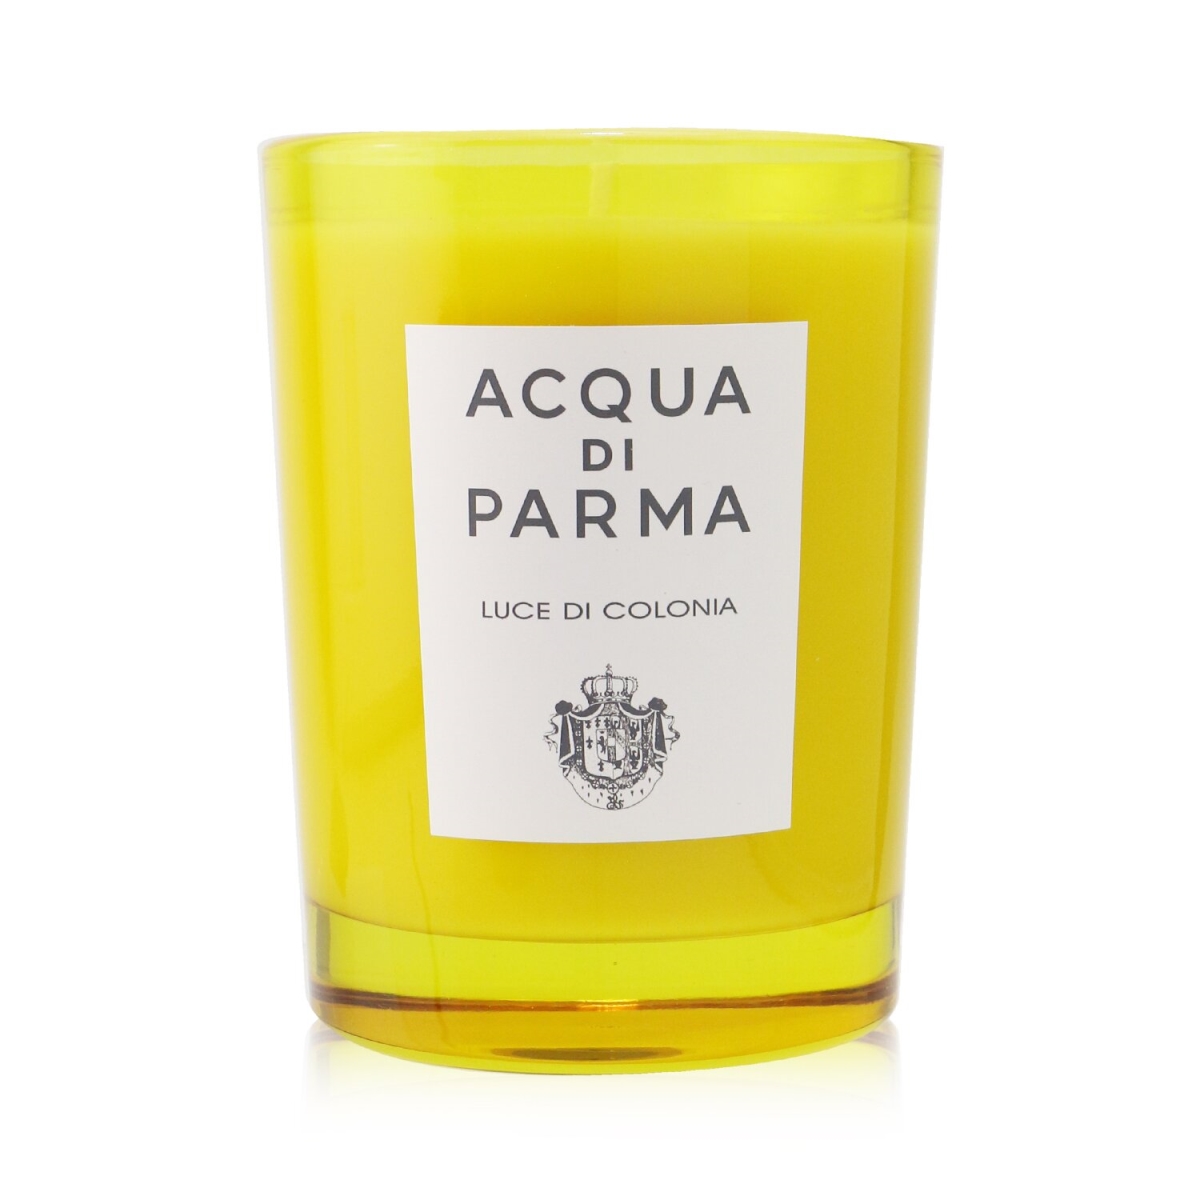 Picture of Acqua Di Parma 255154 7.05 oz Scented Candle - Luce Di Colonia